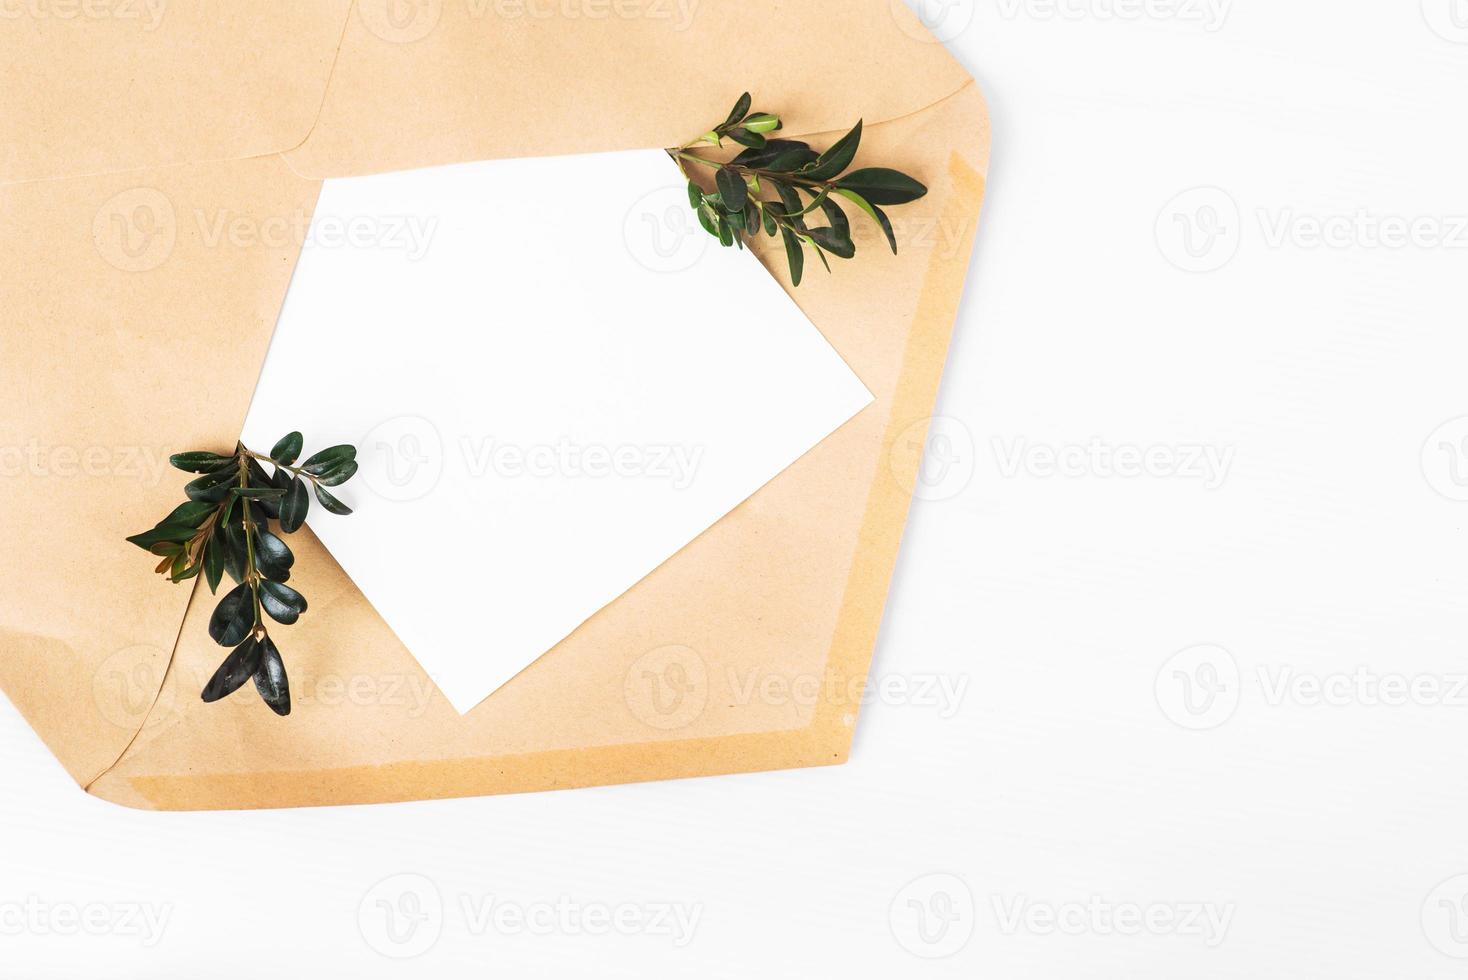 Enveloppe de papier craft ouverte avec un morceau de papier vide et des brindilles vertes avec des feuilles isolées sur fond blanc photo